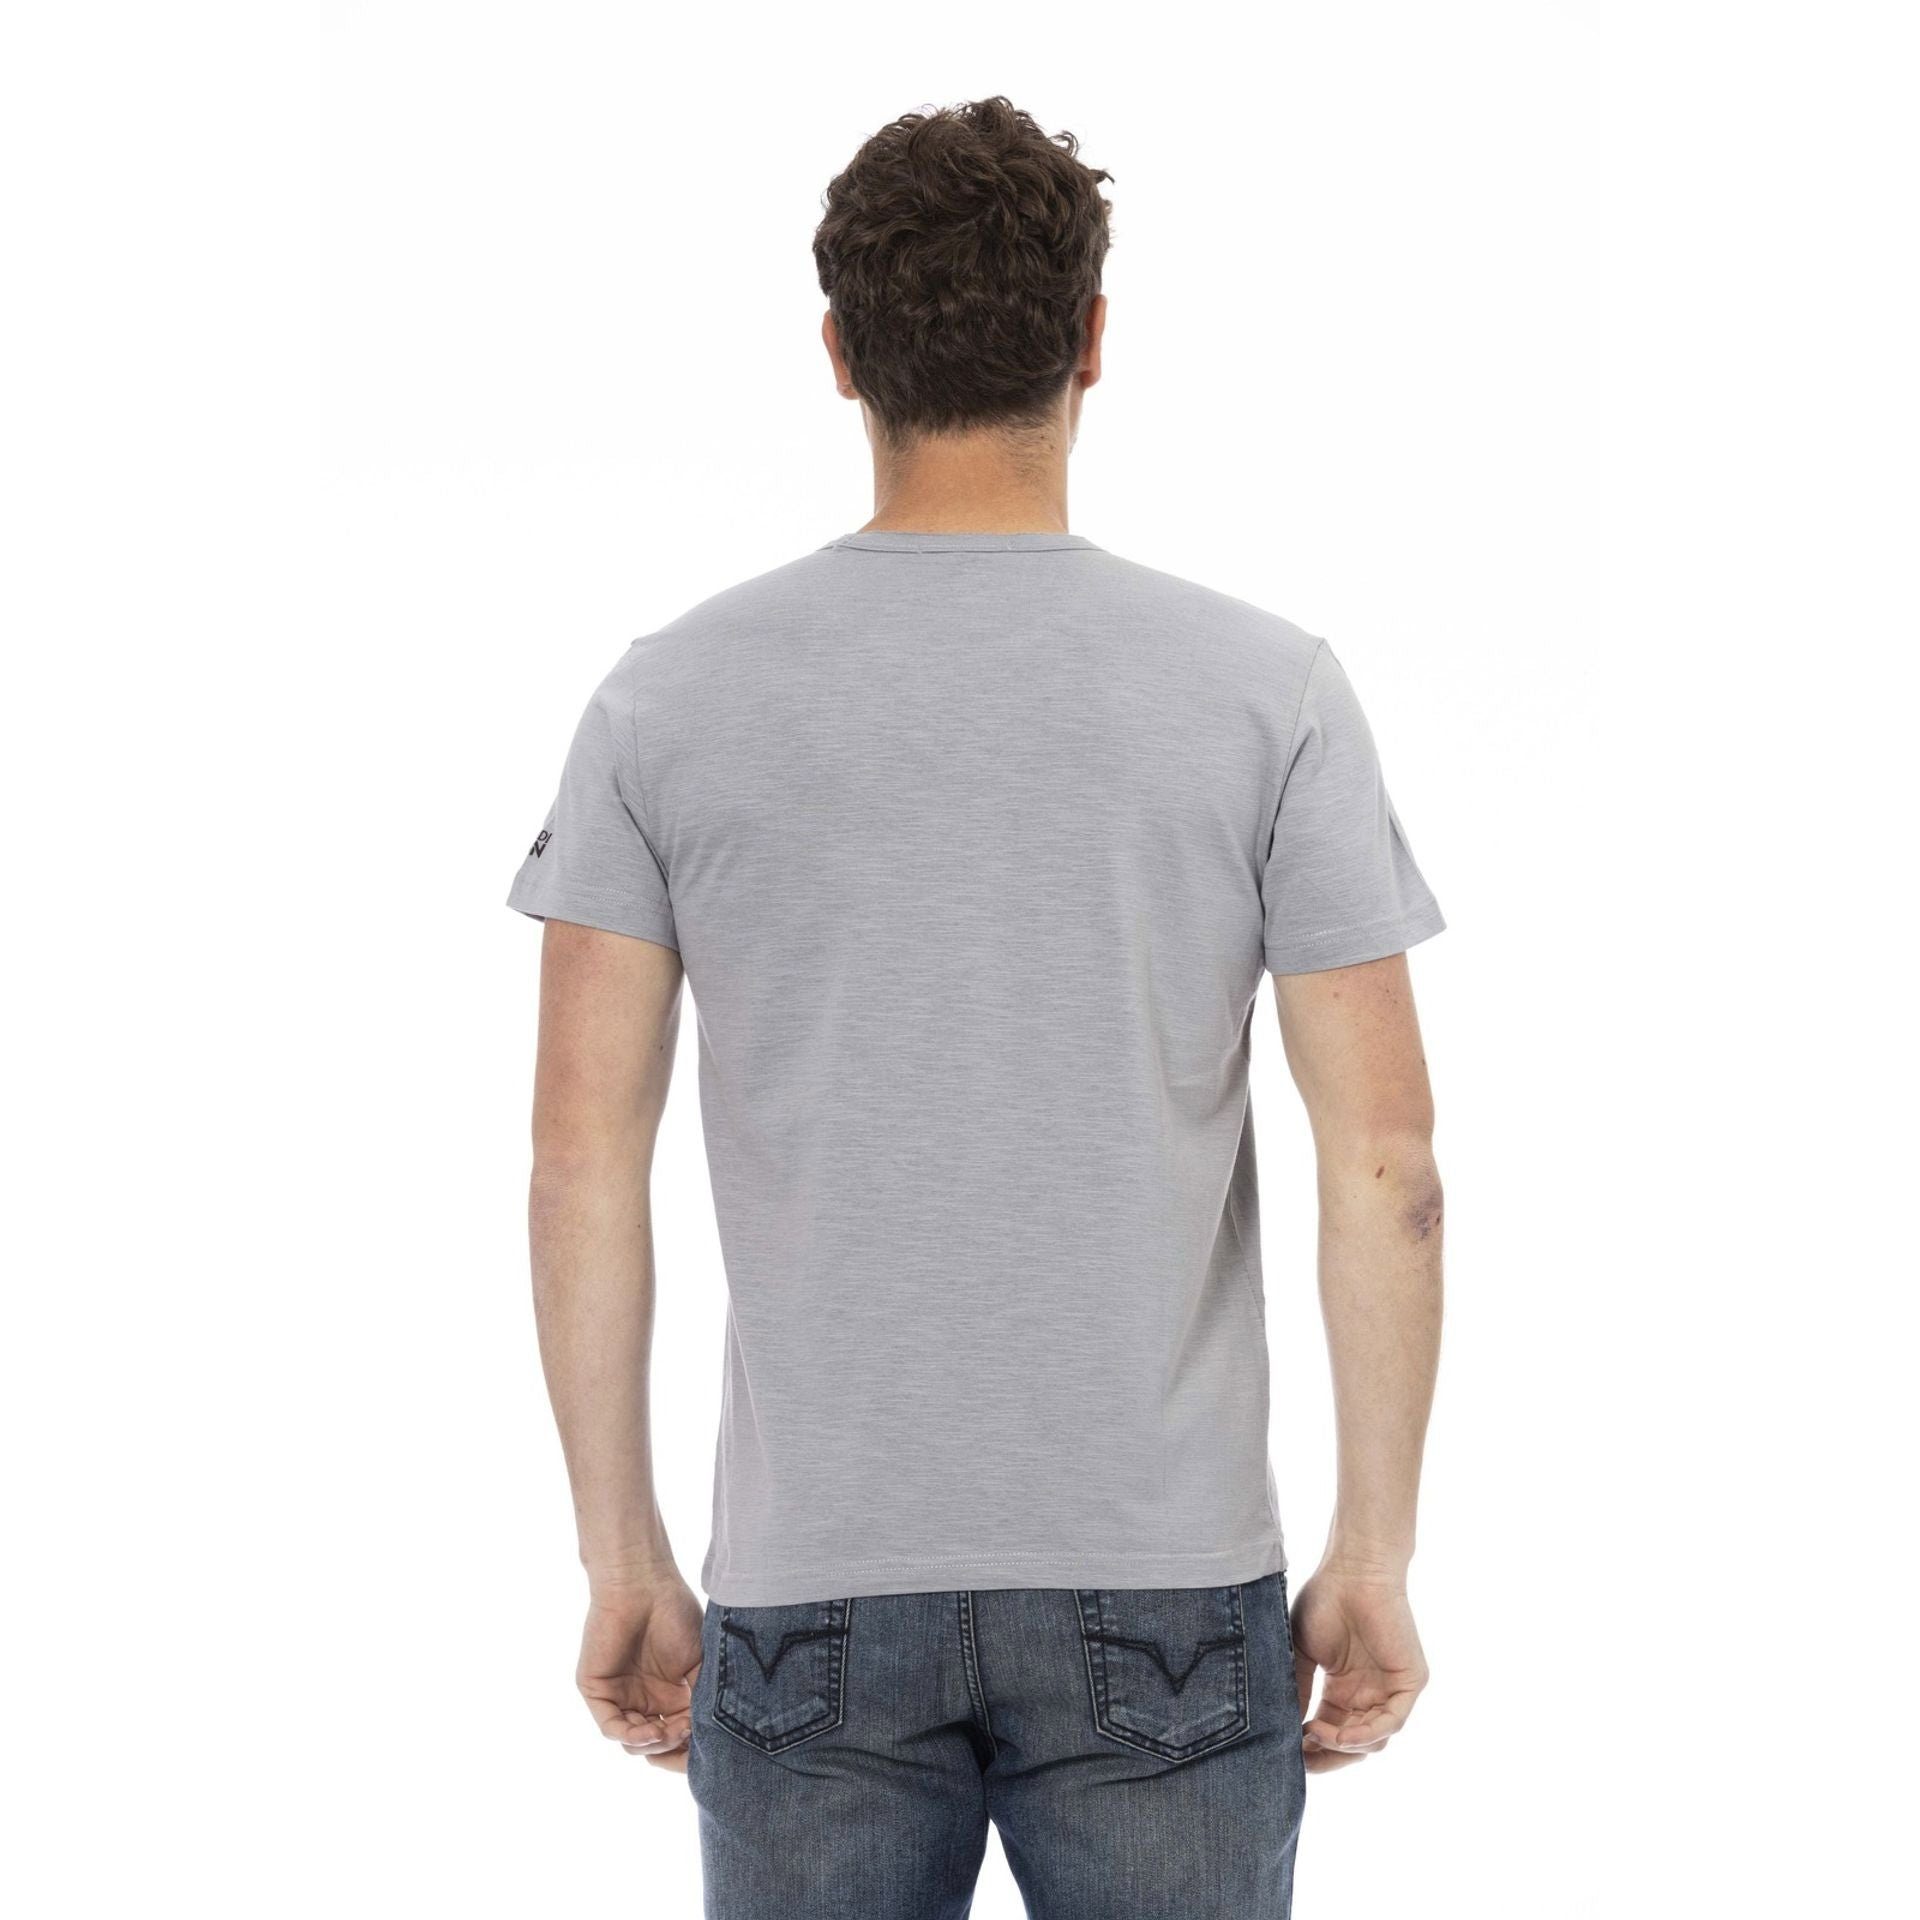 Logo-Muster Trussardi T-Shirts, Action stilvolle subtile, Trussardi zeichnet Grau aus, Note das aber T-Shirt Es verleiht das sich durch eine